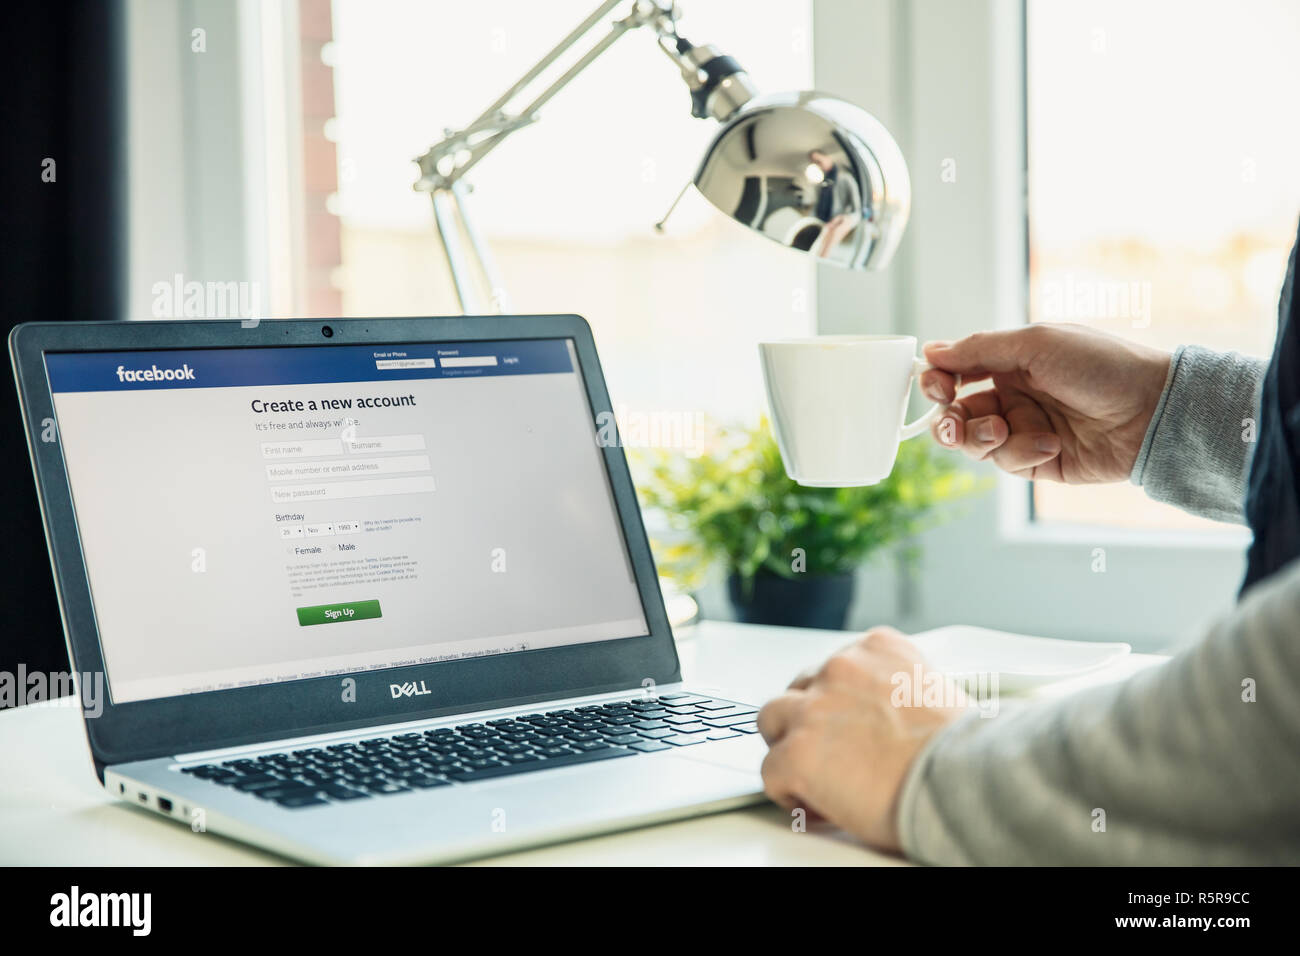 WROCLAW, POLOGNE - Novembre 29th, 2018 : Les ordinateurs portables sur le bureau en bureau avec Facebook Site sur l'écran. Facebook, Inc. est un Américain s en ligne Banque D'Images